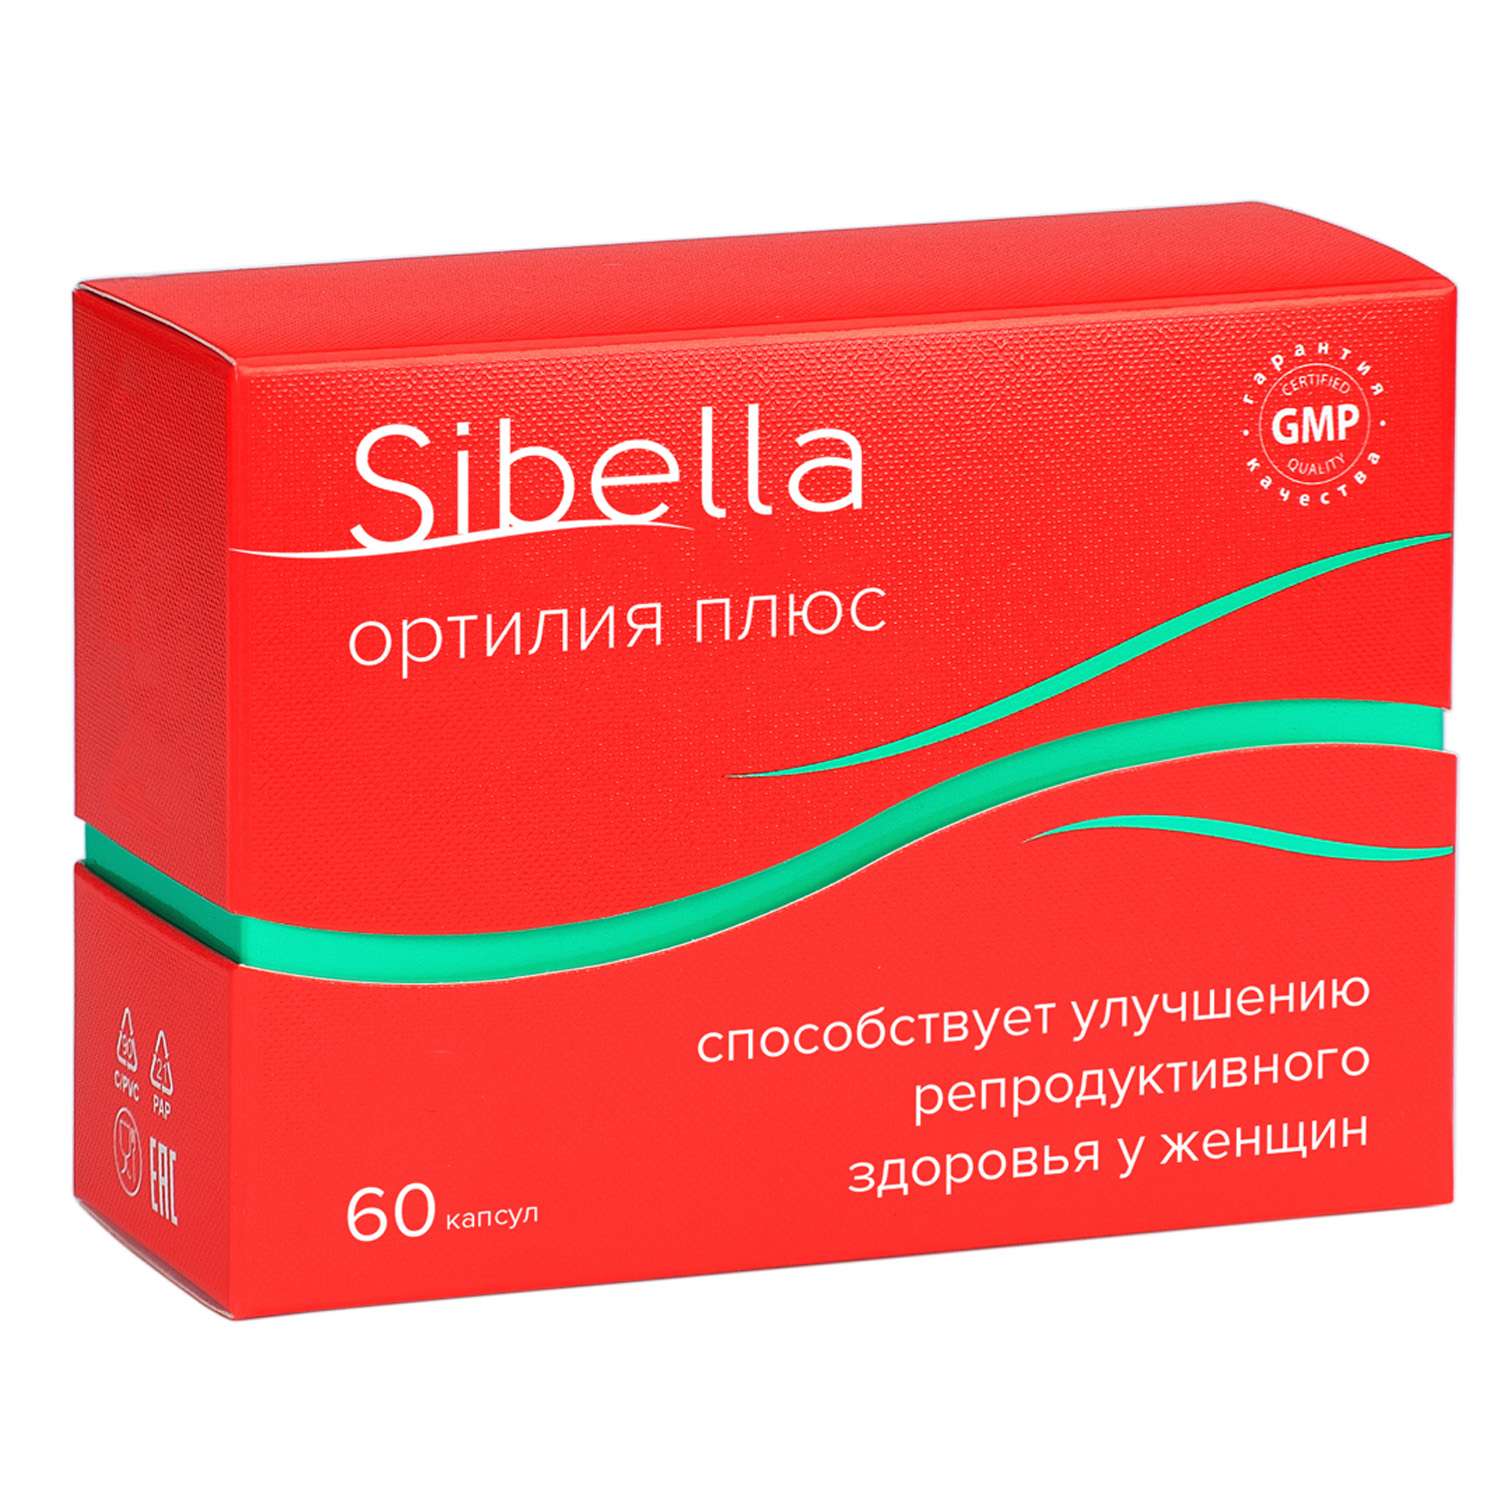 Биологически активная добавка Sibella Ортилия плюс  0.5г*60капсул - фото 1